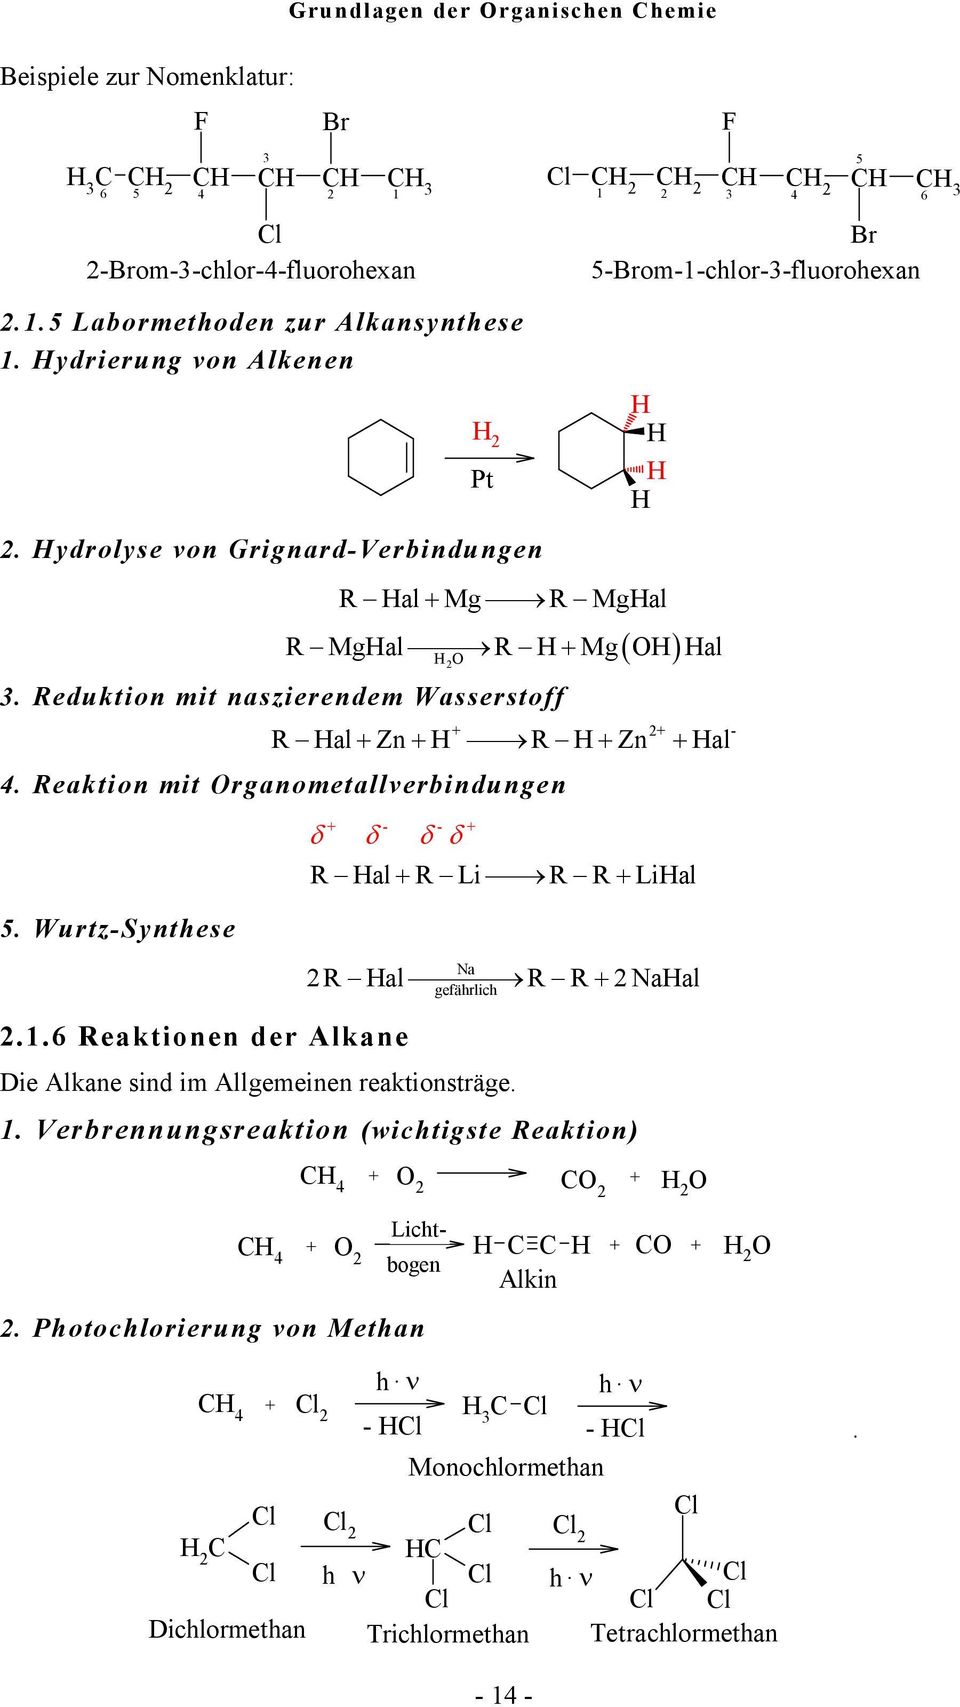 Wurtz-Synthese - - δ δ δ δ 2.1.6 eaktionen der Alkane al Li Lial 2 al 2aal a gefährlich Die Alkane sind im Allgemeinen reaktionsträge. 1. Verbrennungsreaktion (wichtigste eaktion) 4 2 2 2 2.